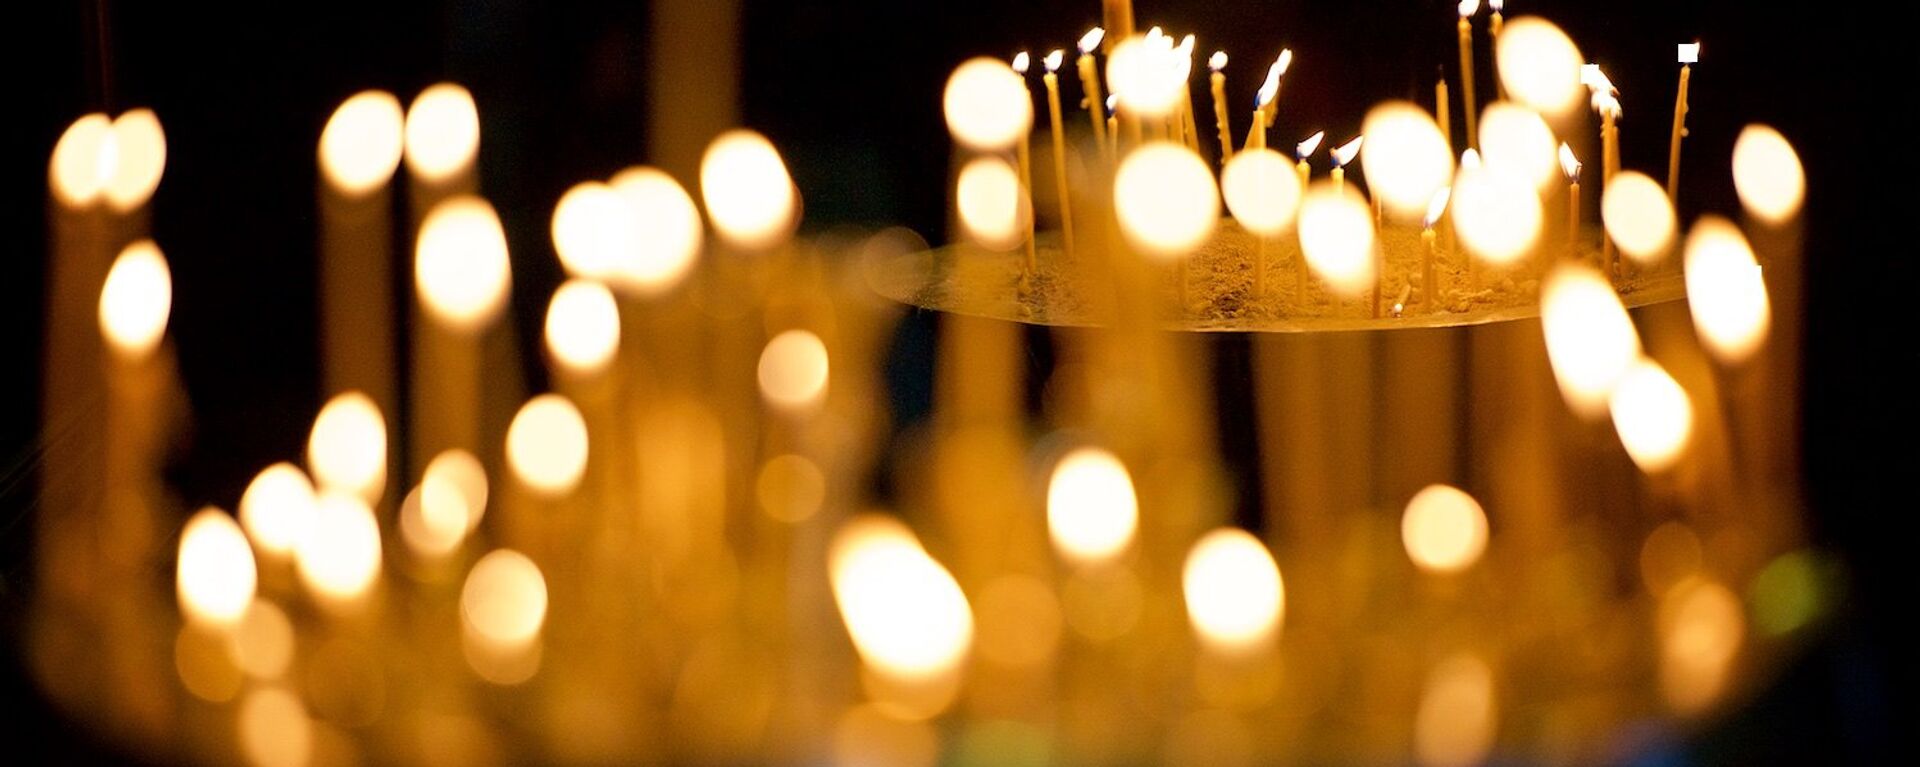  Горящие свечи у икон в кафедральном соборе Светицховели - Sputnik Грузия, 1920, 18.06.2021